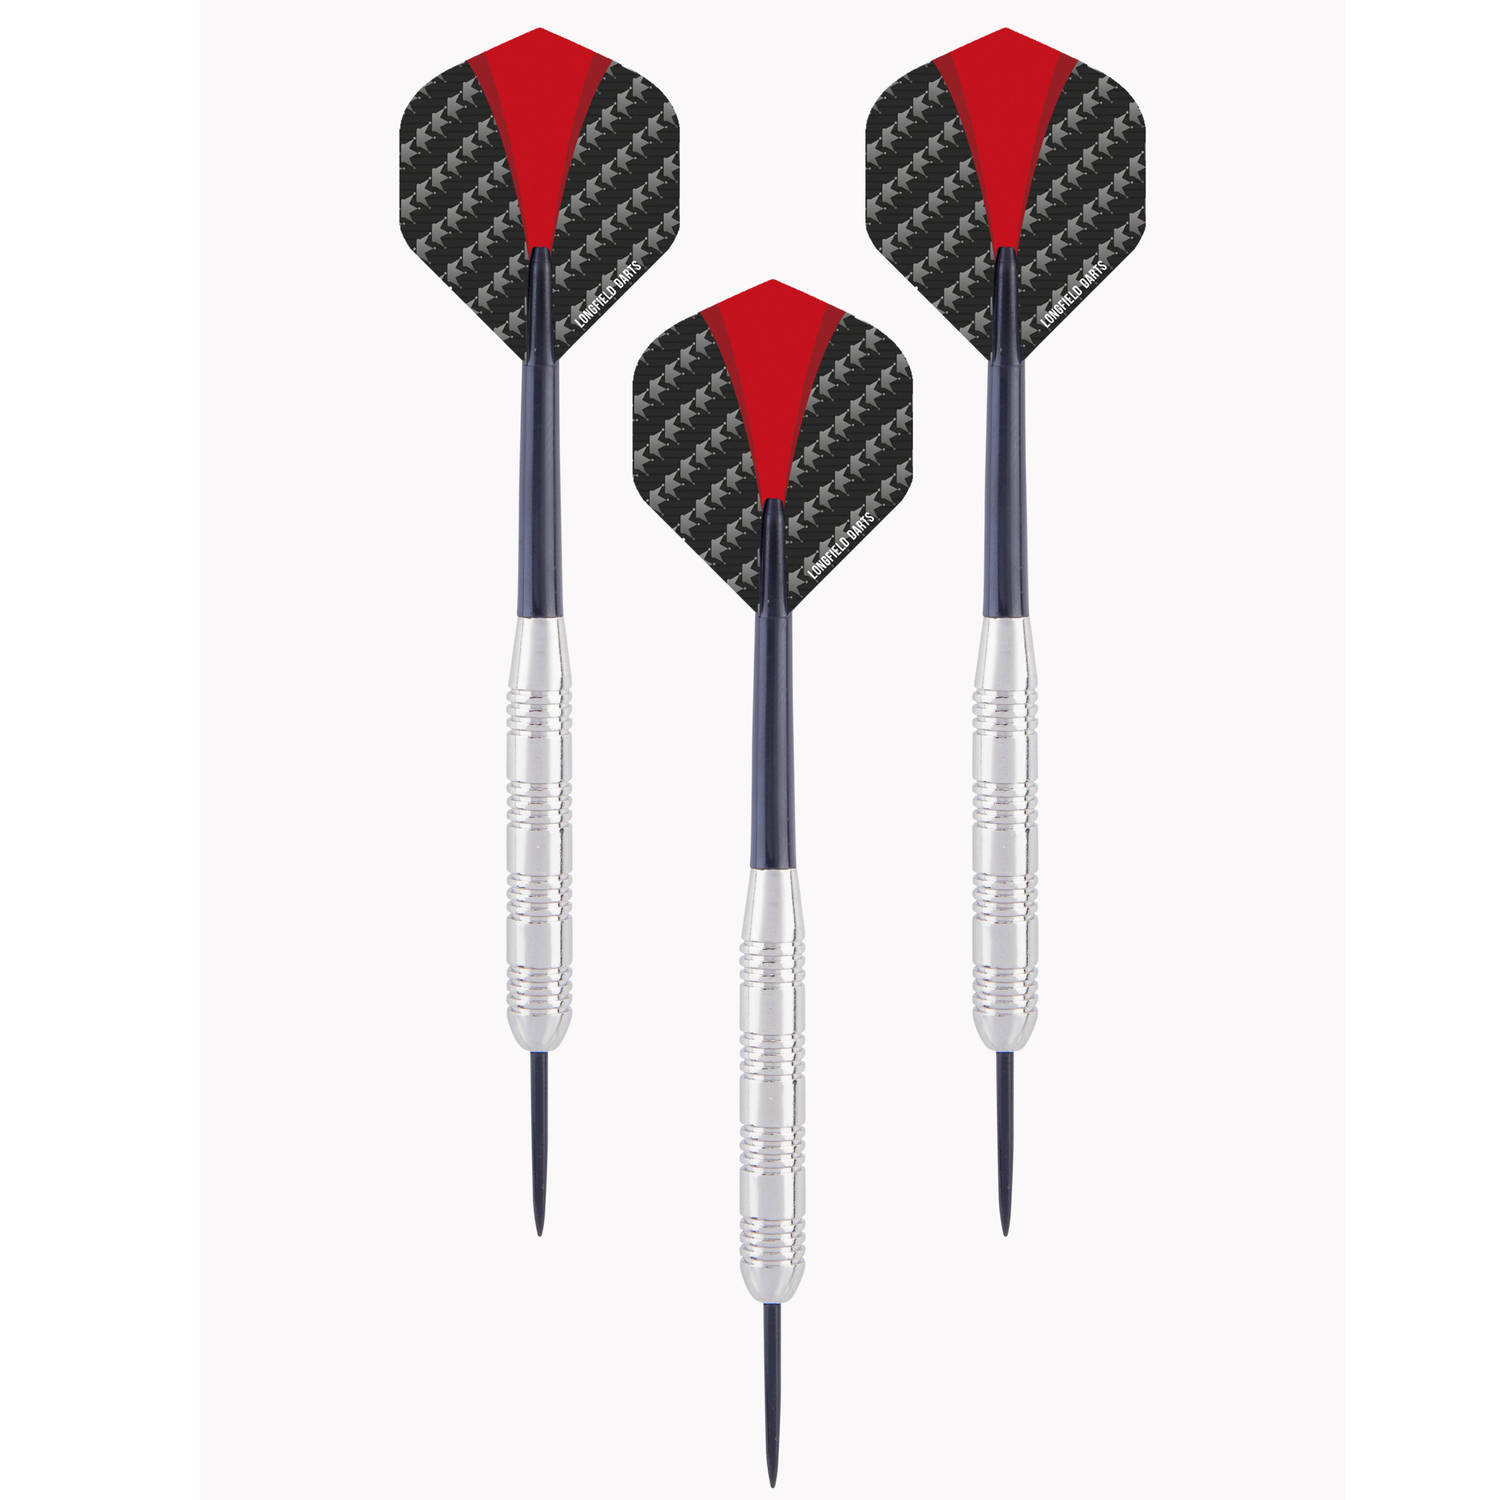 1x Set van dartpijltjes met rood met zwarte flights 21 grams - Dartpijlen